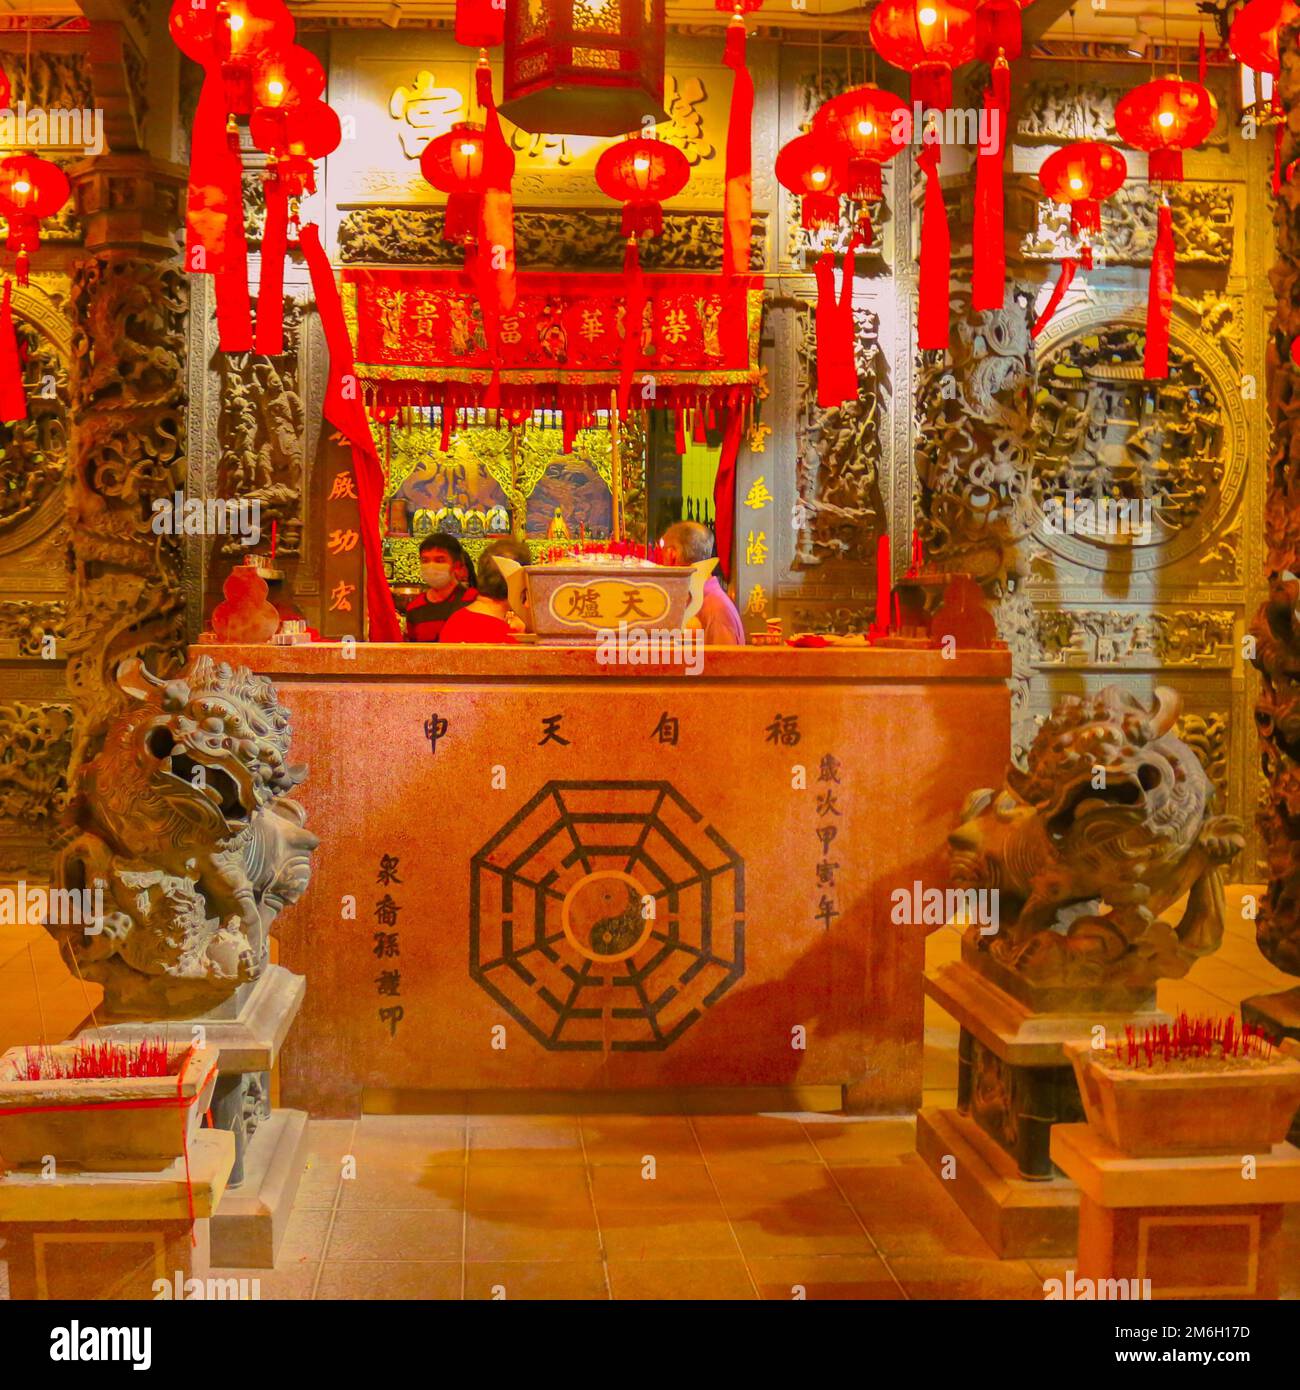 Die Rezeption eines Hotels im Stil eines alten chinesischen Tempelaltar in George Town, Penang, Malaysia Stockfoto